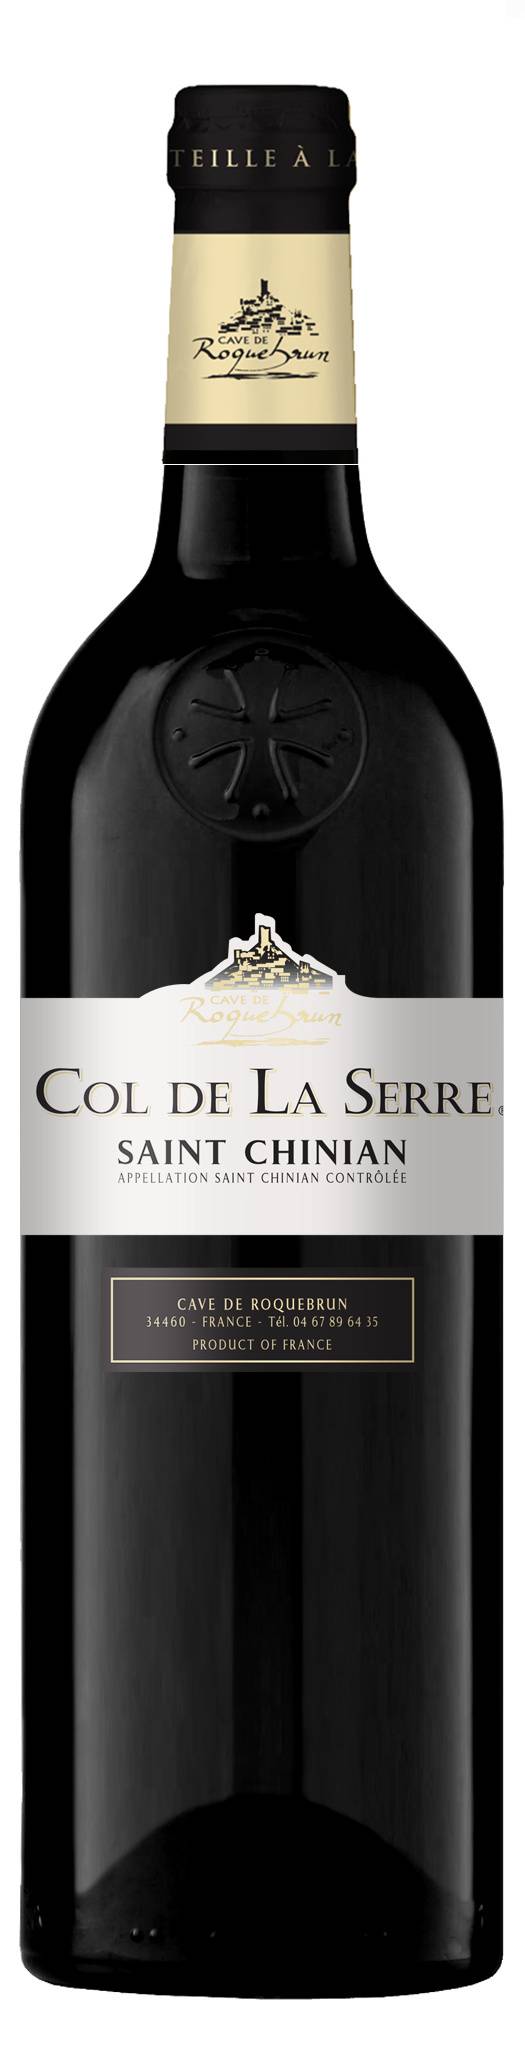 Col de La Serre - Saint chinian vin rouge 2017 (750 ml)